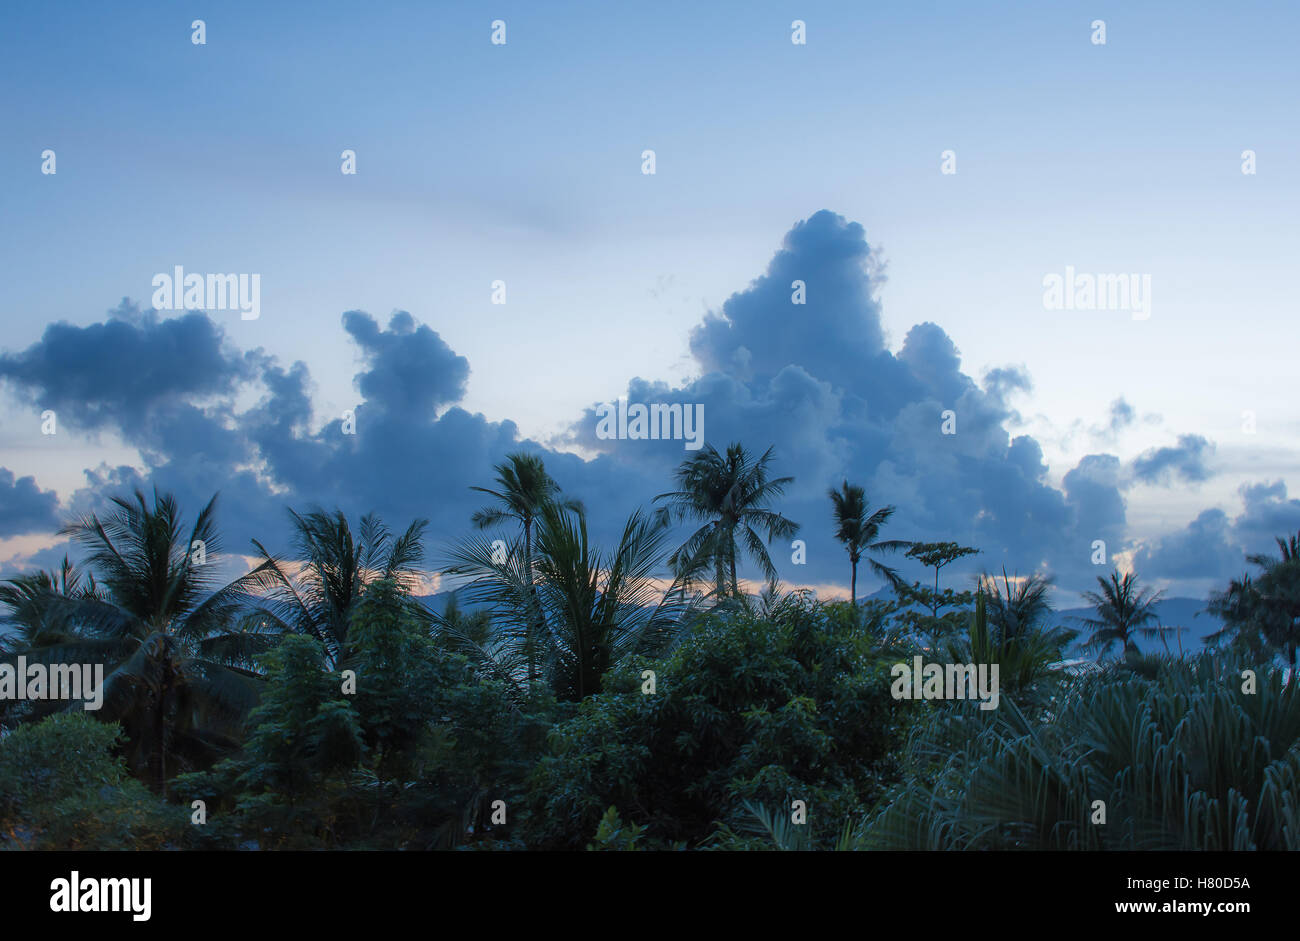 Uno splendido scenario di incredibili formazioni di nubi sul Cielo di tramonto con palme prima del buio Foto Stock